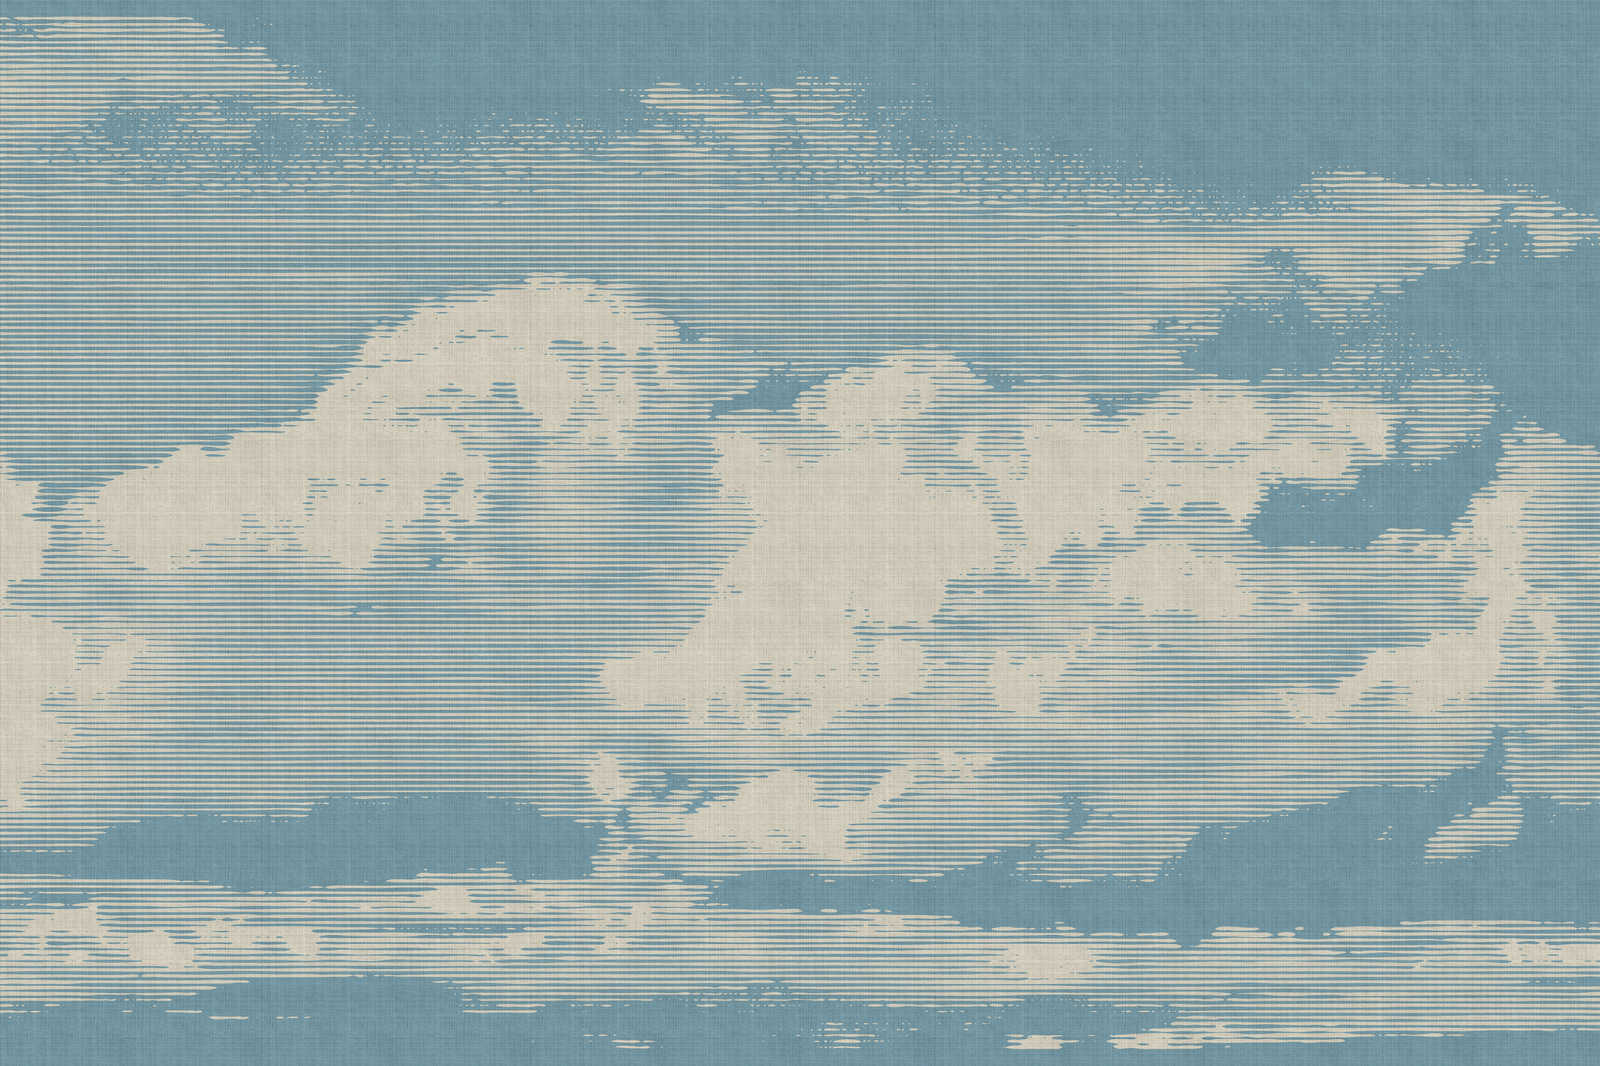             Clouds 1 - Toile céleste avec motif de nuages en lin naturel - 1,20 m x 0,80 m
        